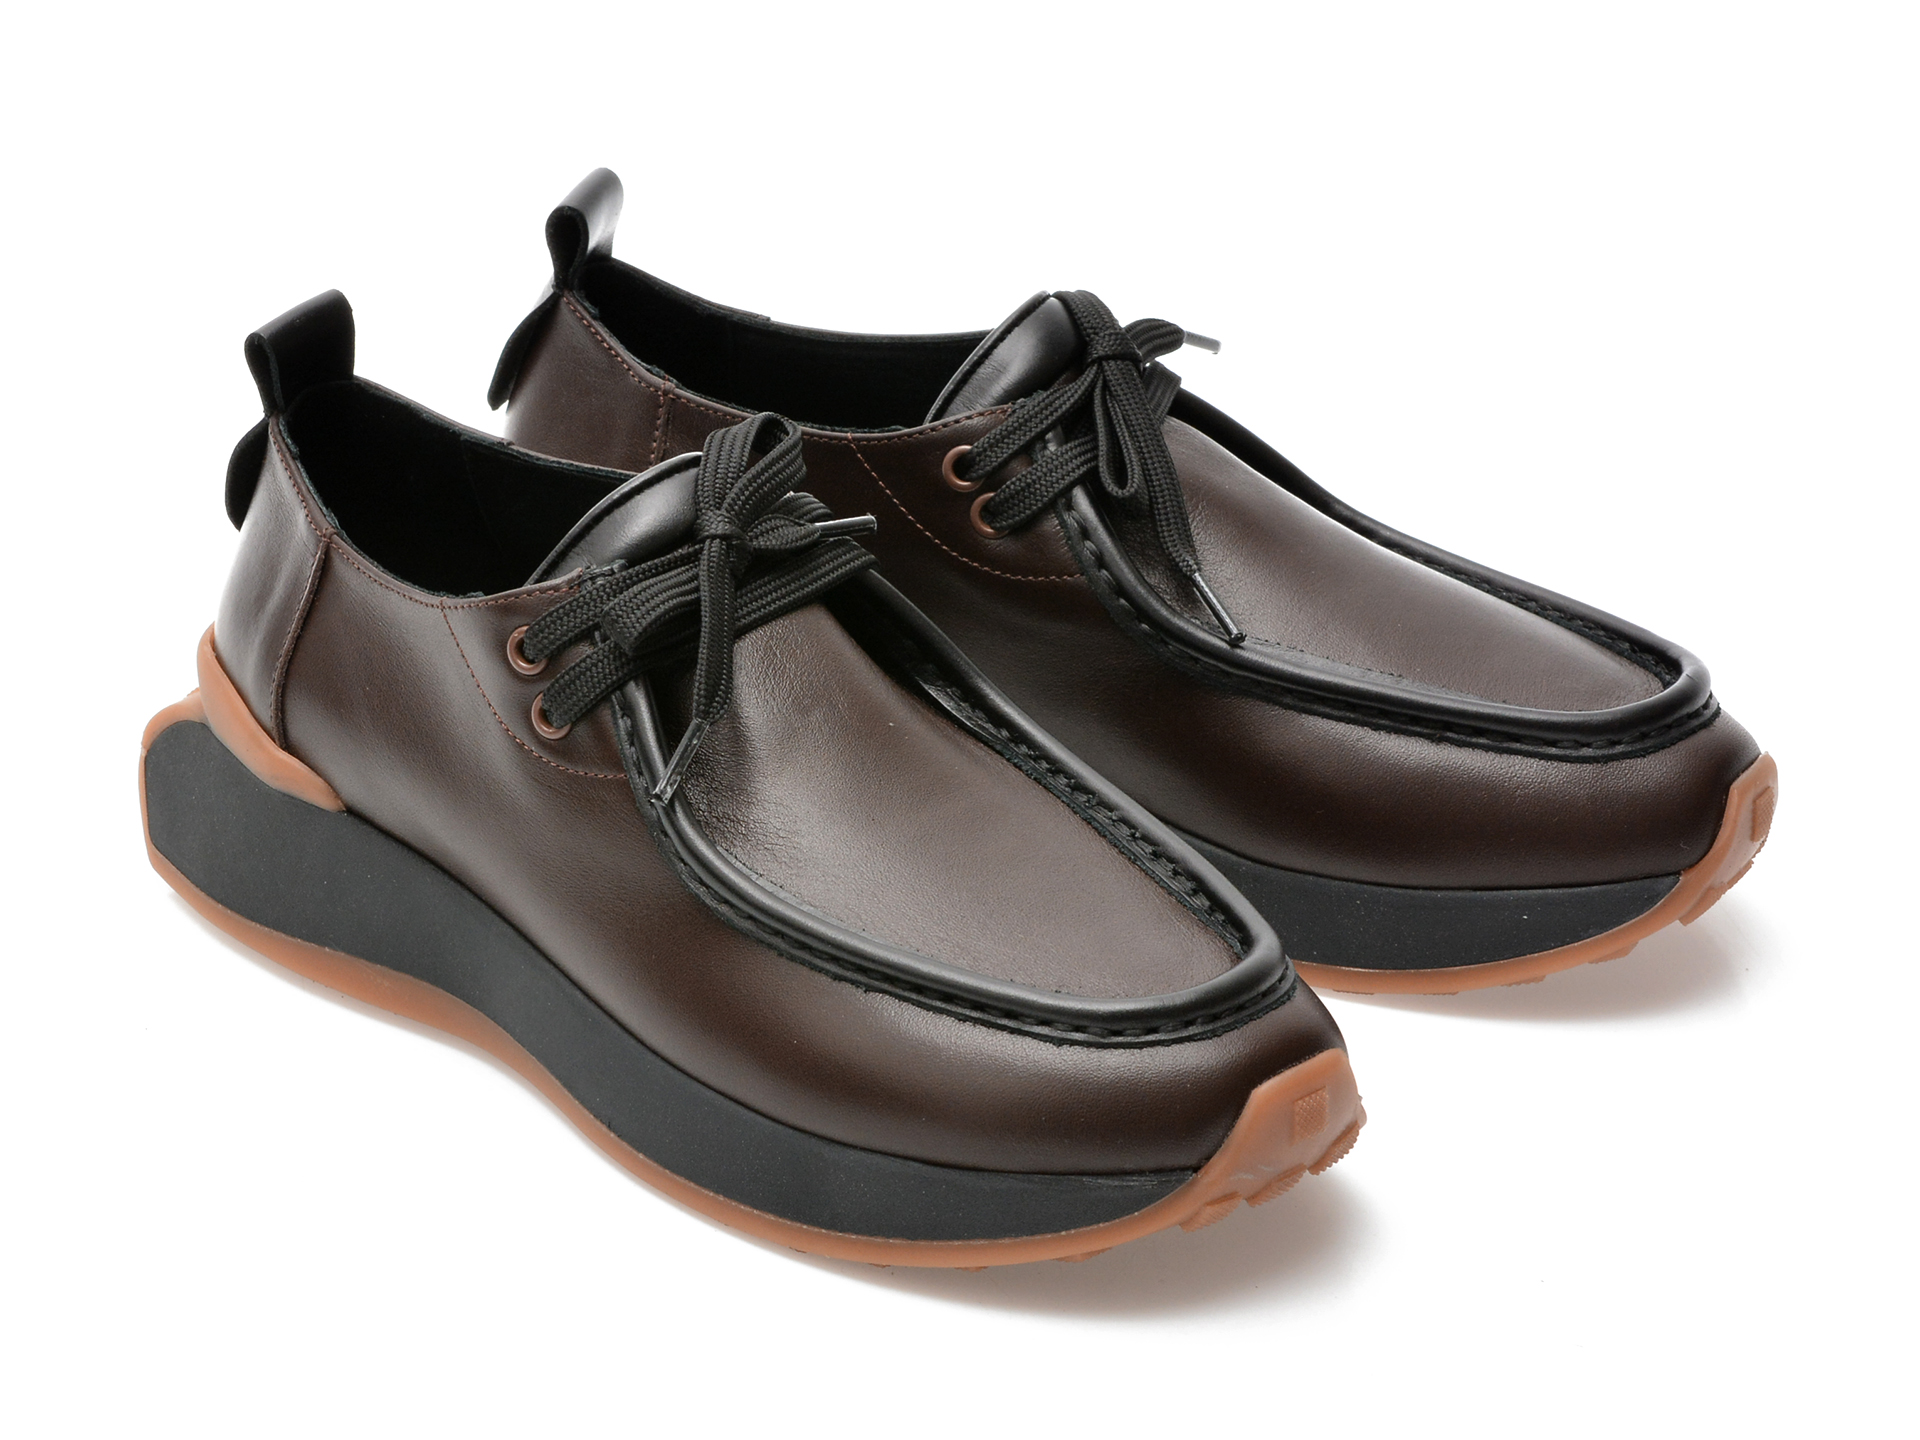 Comandă Încălțăminte Damă, la Reducere  Pantofi GRYXX maro, 42212, din piele naturala Branduri de top ✓